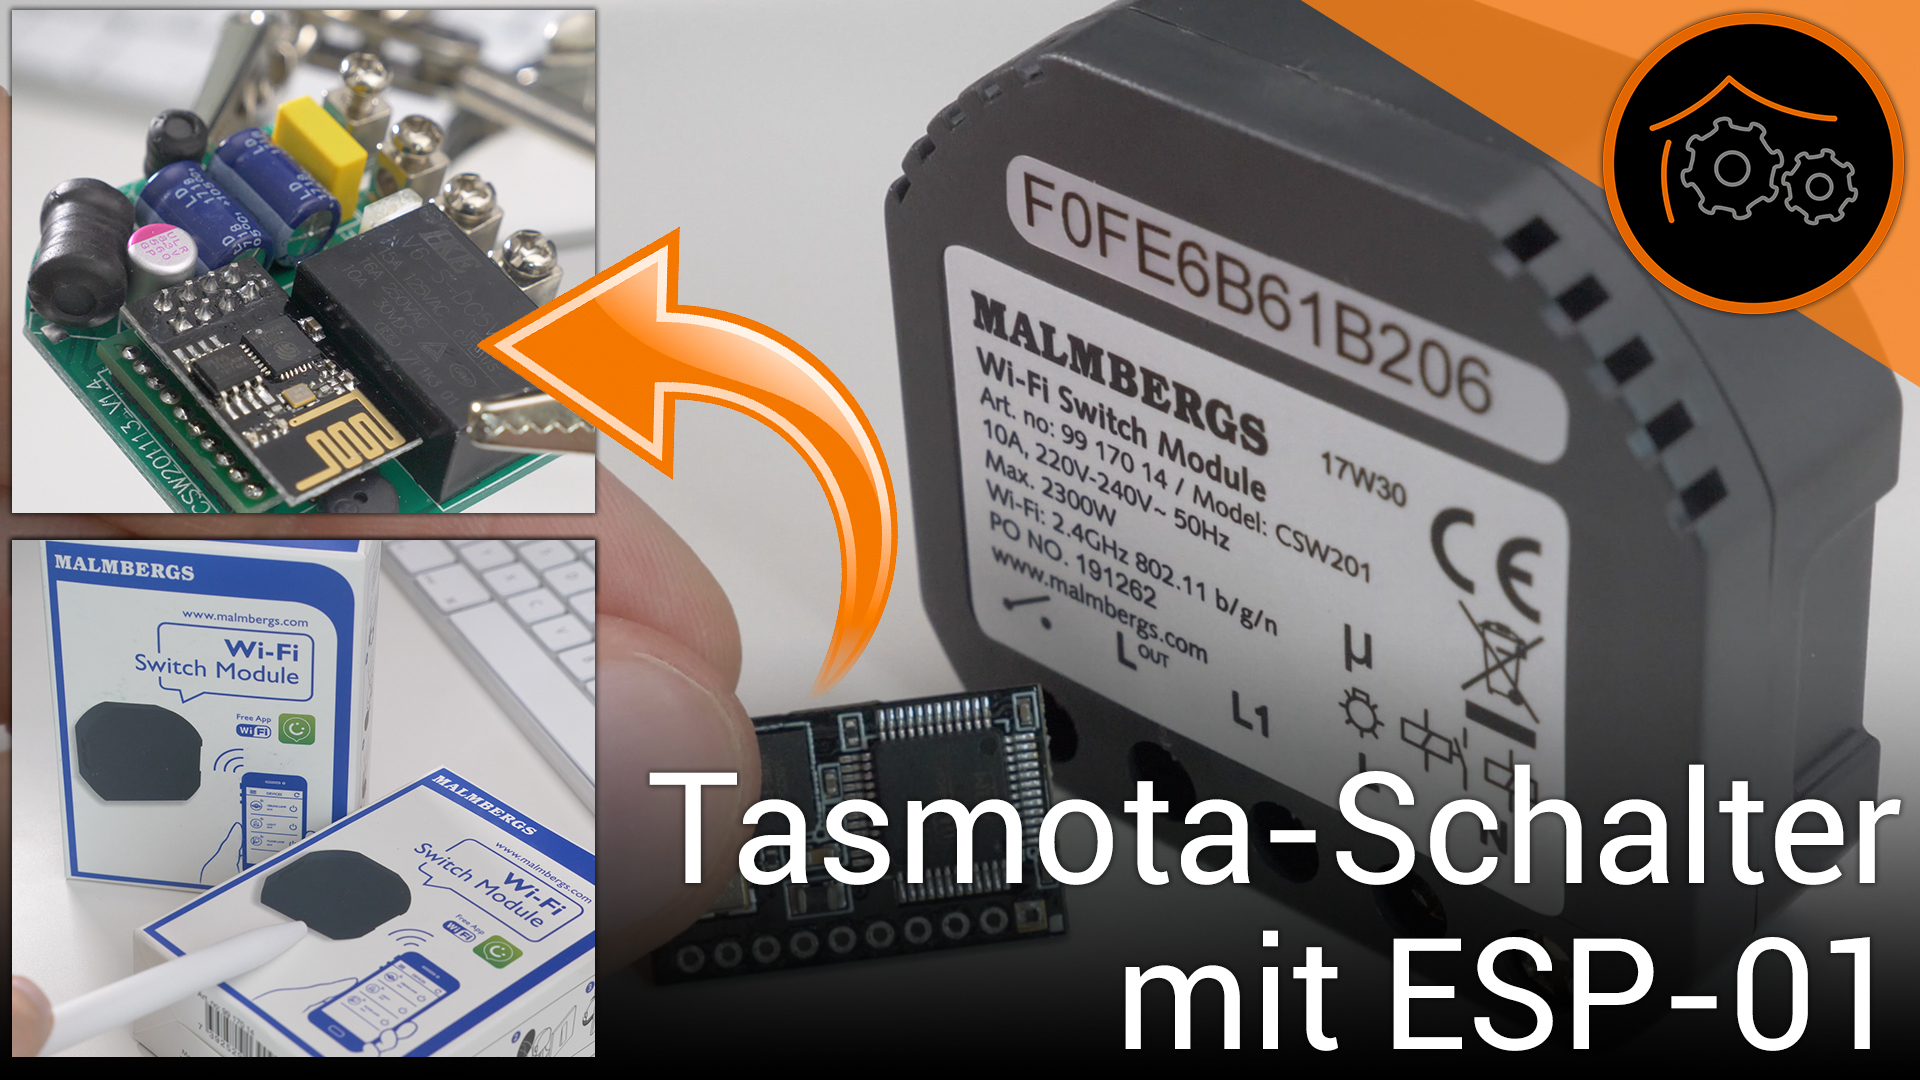 Projekt: Malmbergs WiFi-Schalter auf ESP01/Tasmota umrüsten